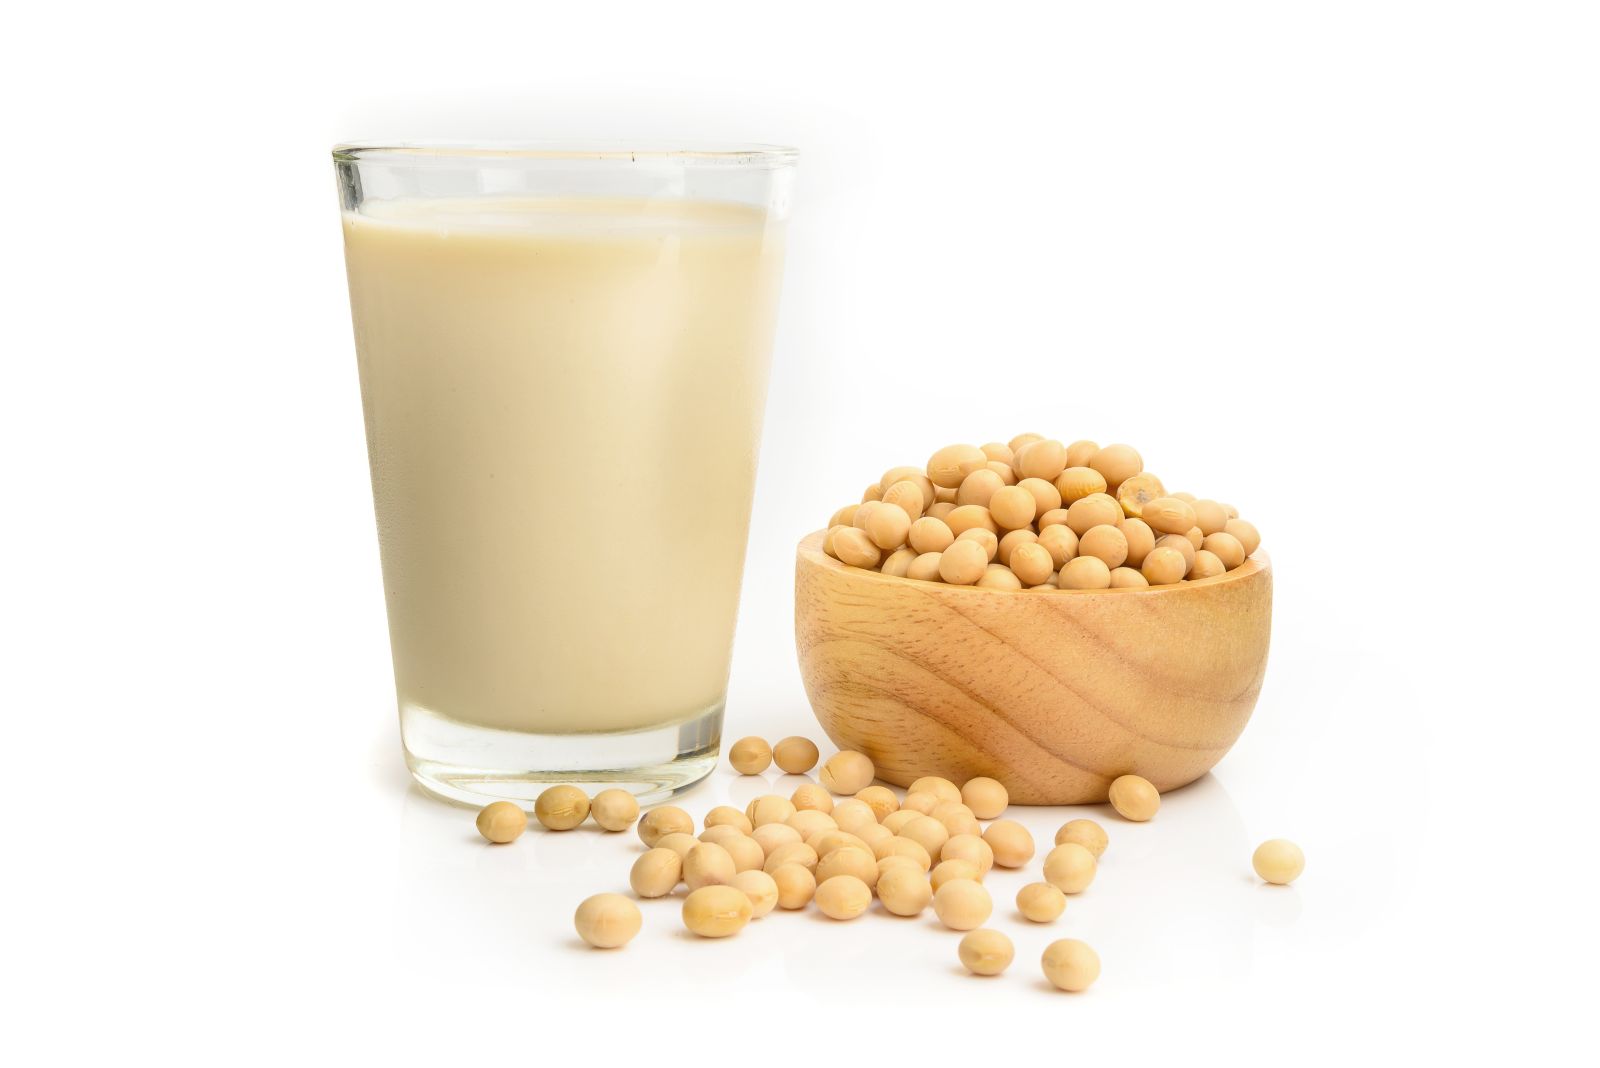 Soybean milk via Shutterstock